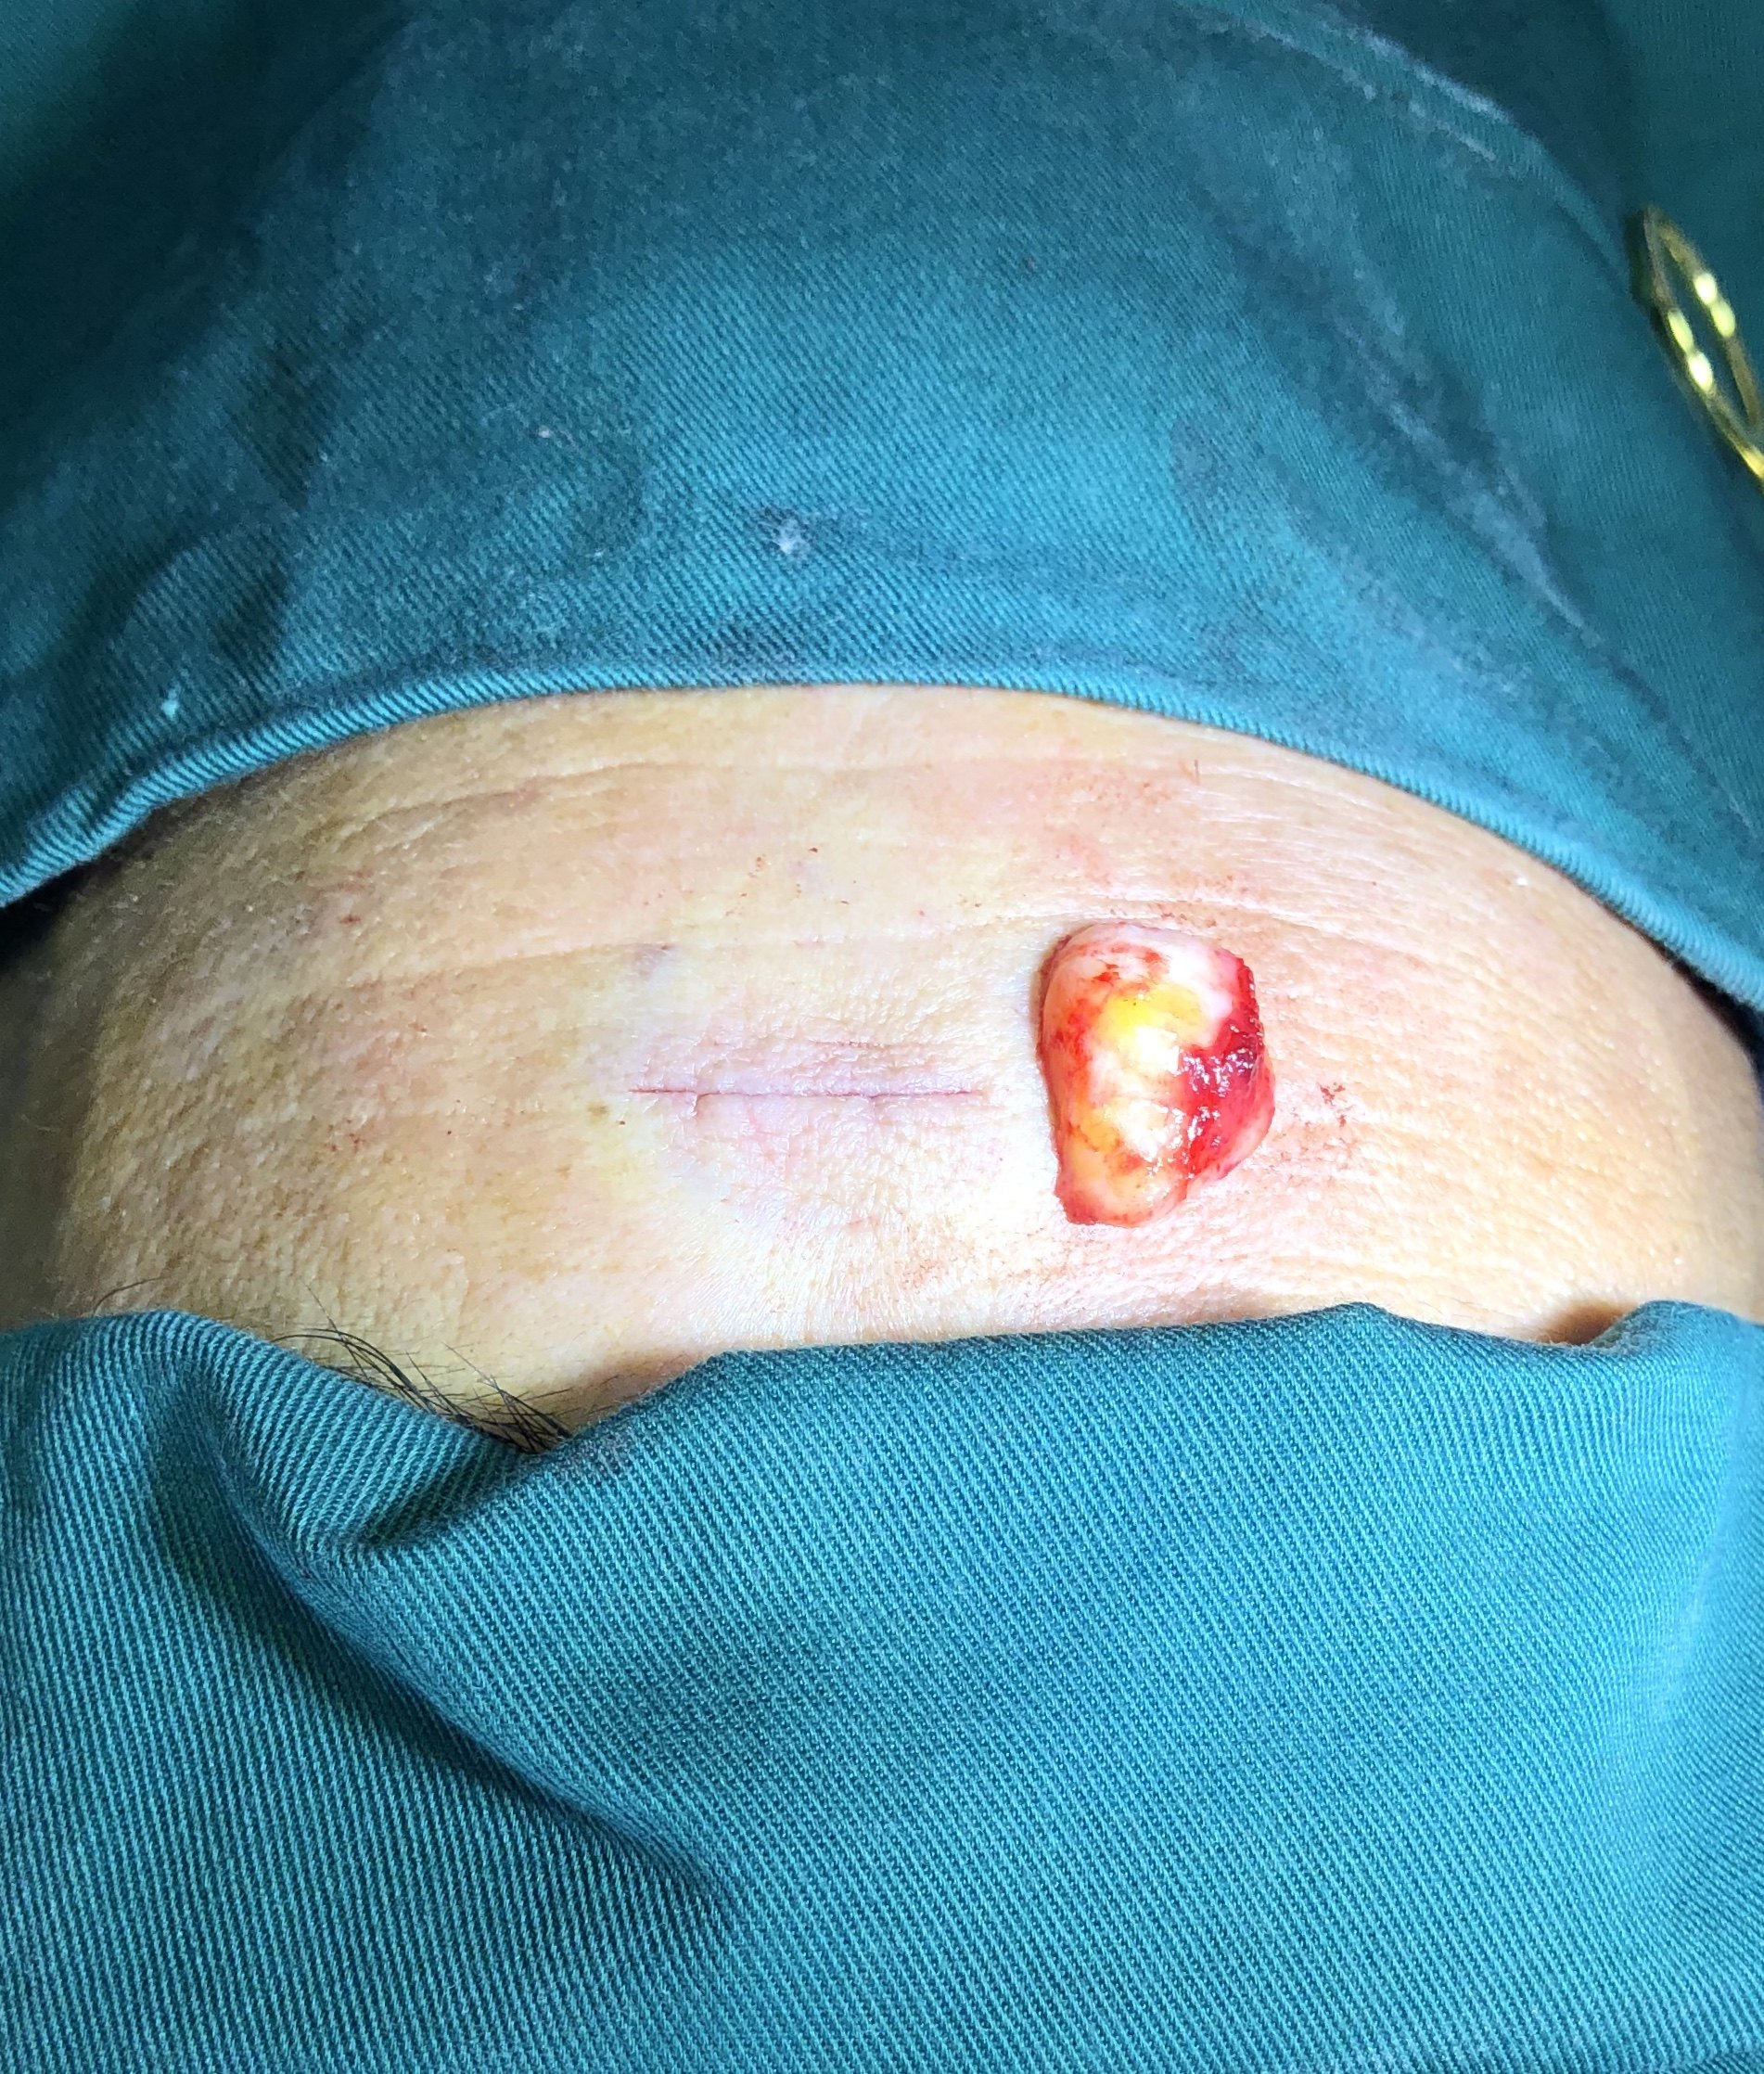 皮下脂肪瘤图片手术图片